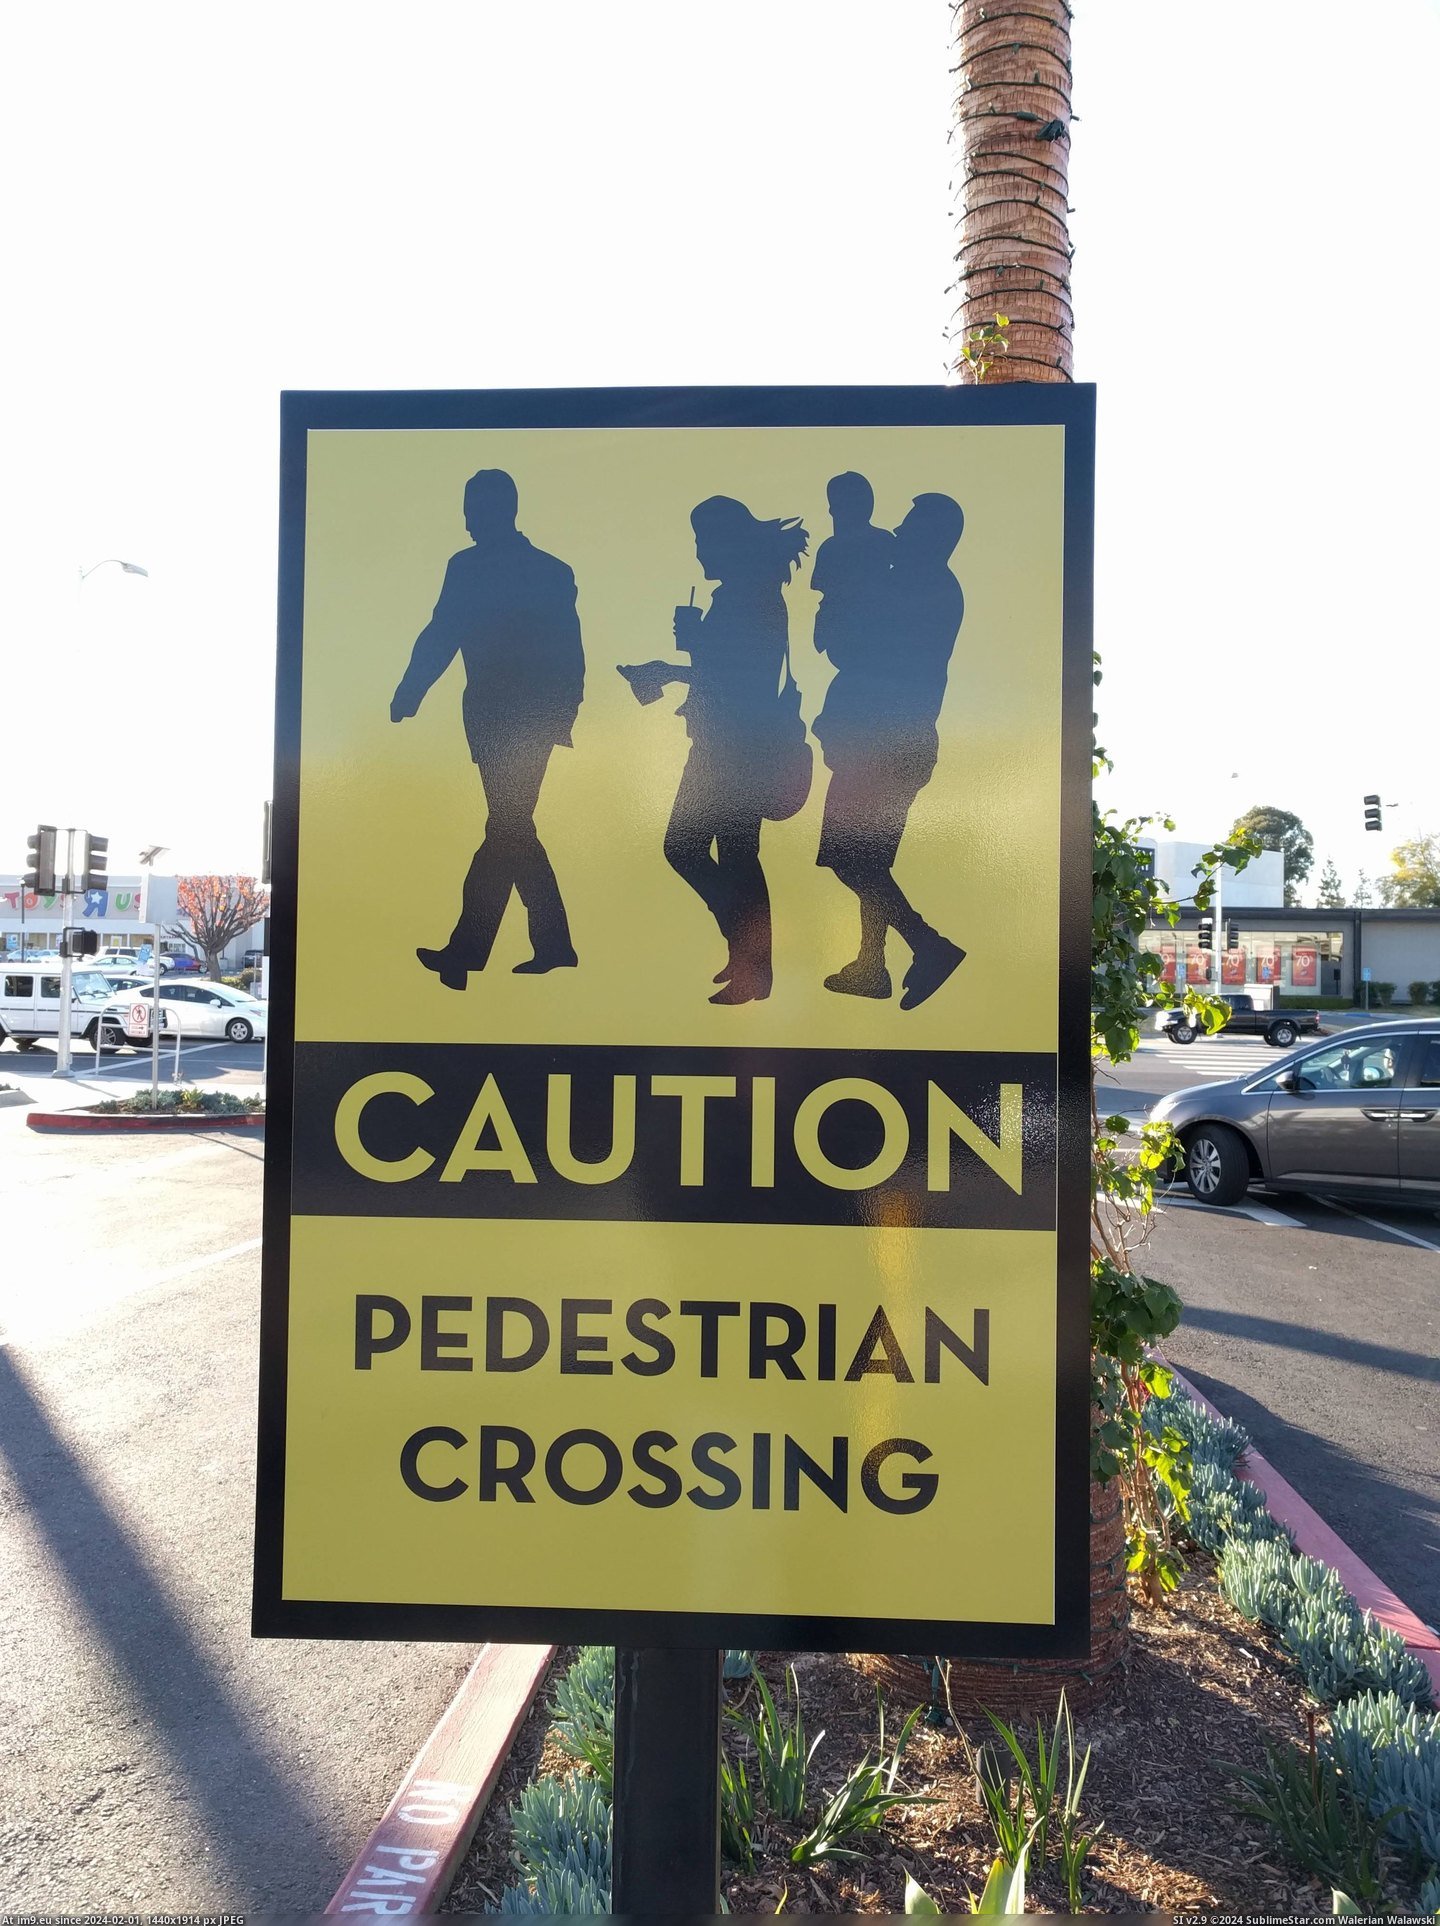 [Mildlyinteresting] This pedestrian crossing sign has realistic people. (in My r/MILDLYINTERESTING favs)